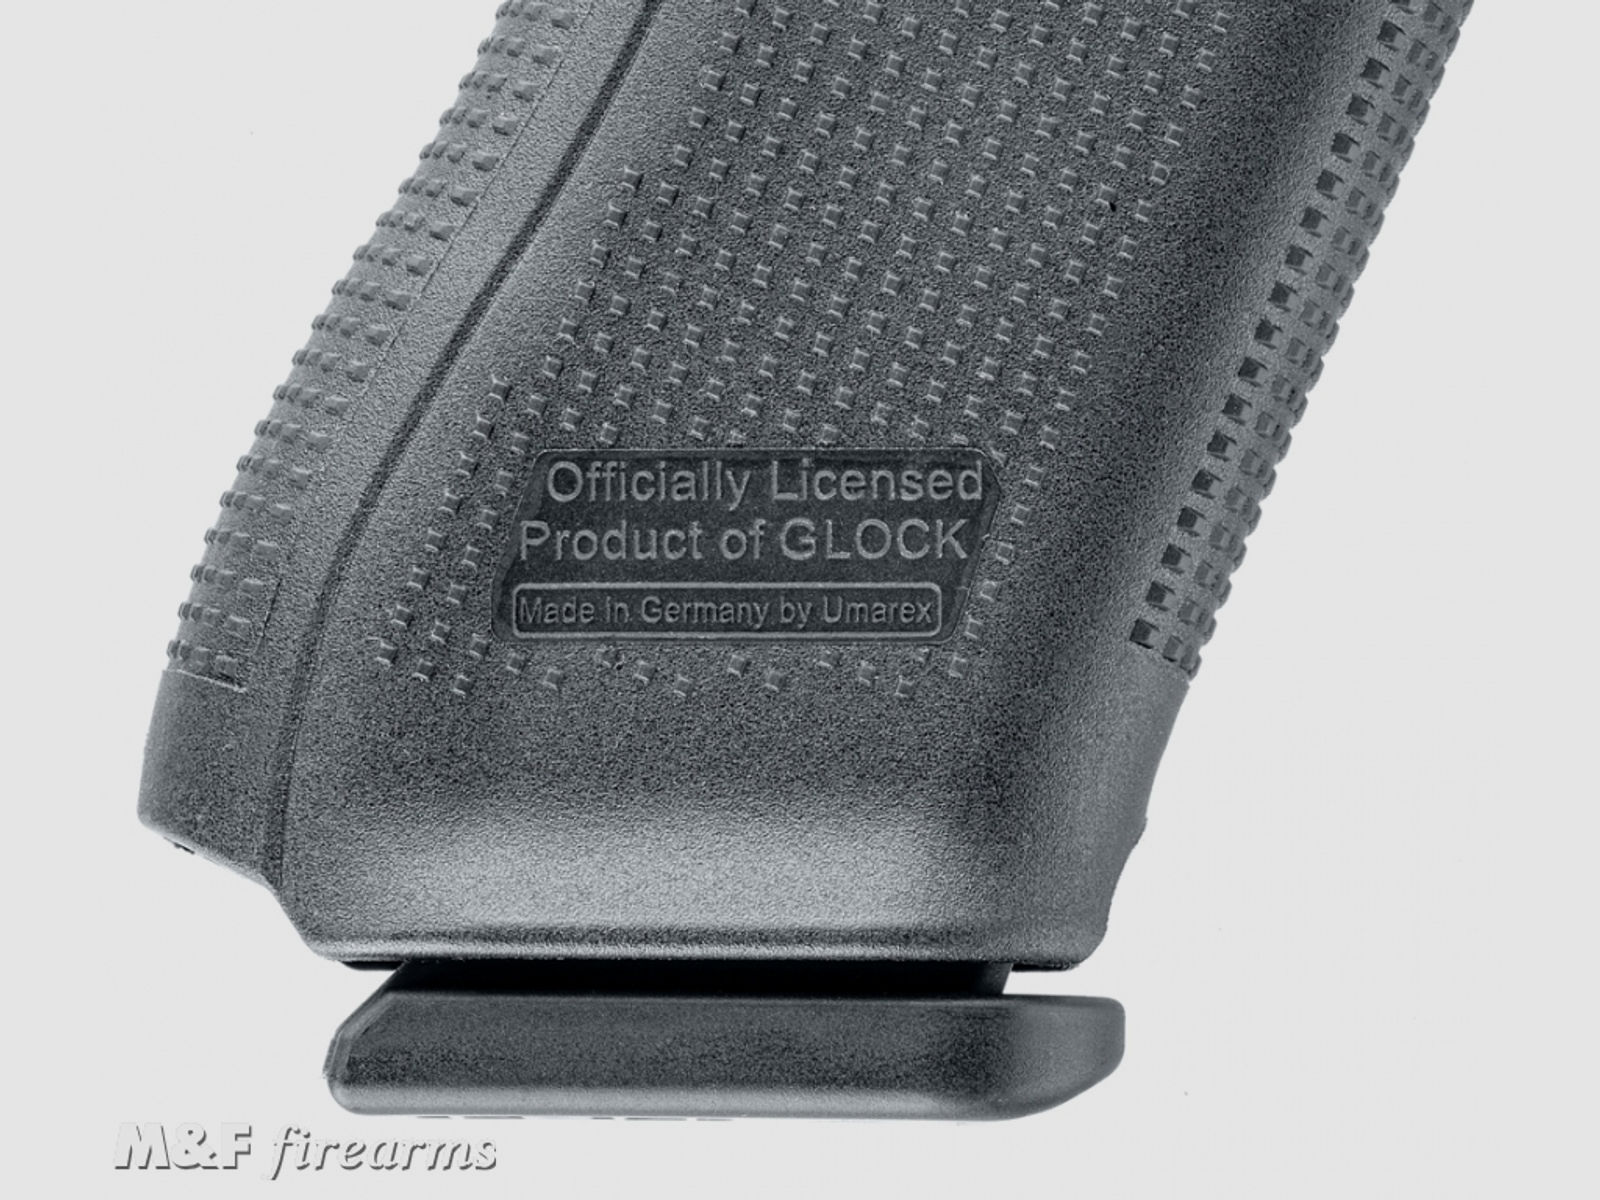 GLOCK 17 Gen5 Kaliber 9mm P.A.K. die erste lizensierte Schreckschusswaffe der Marke GLOCK